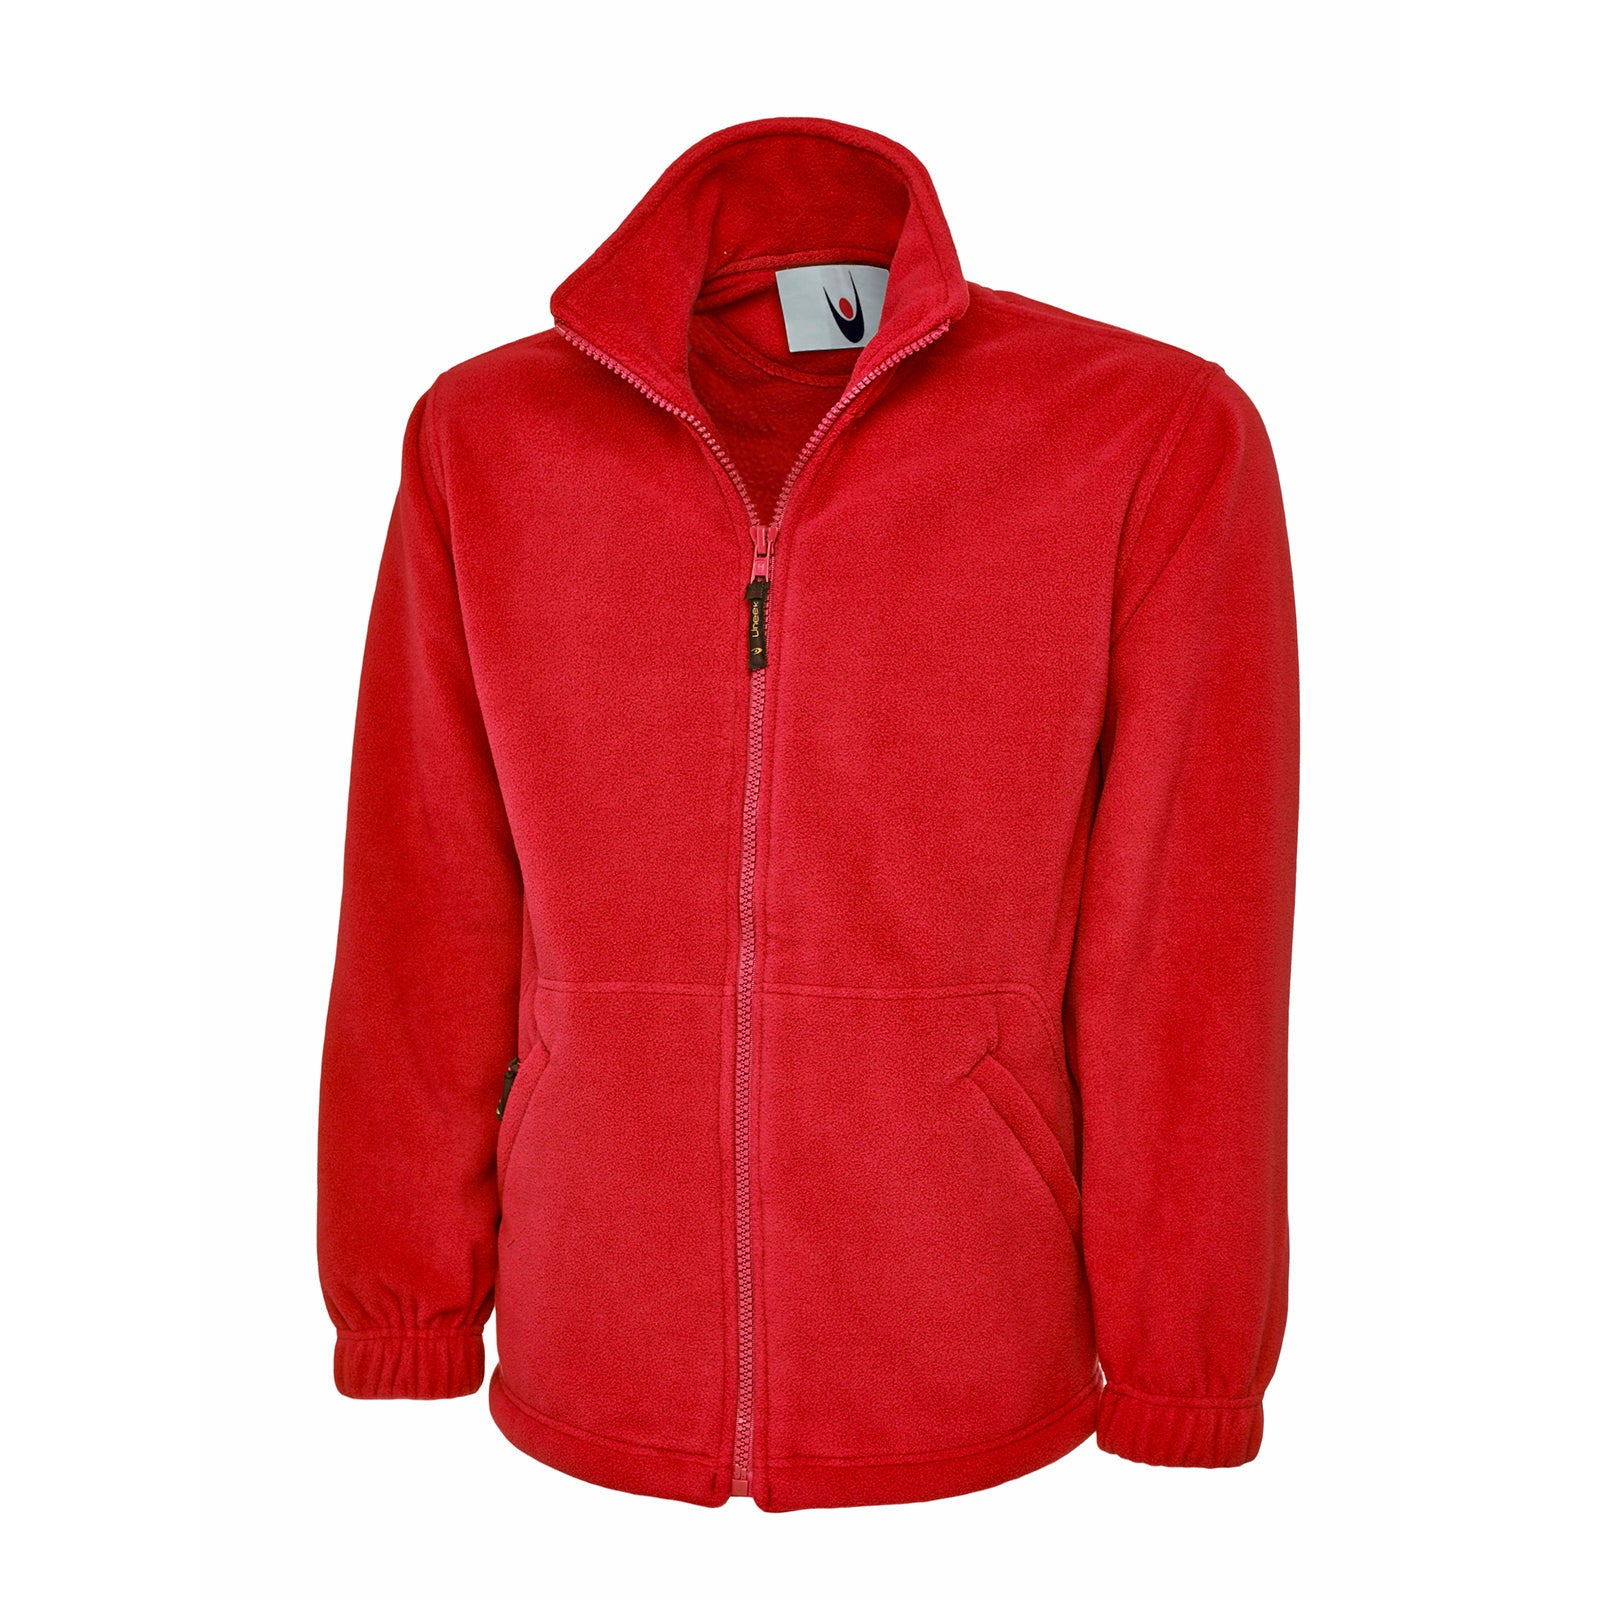 Red microfleece jacket